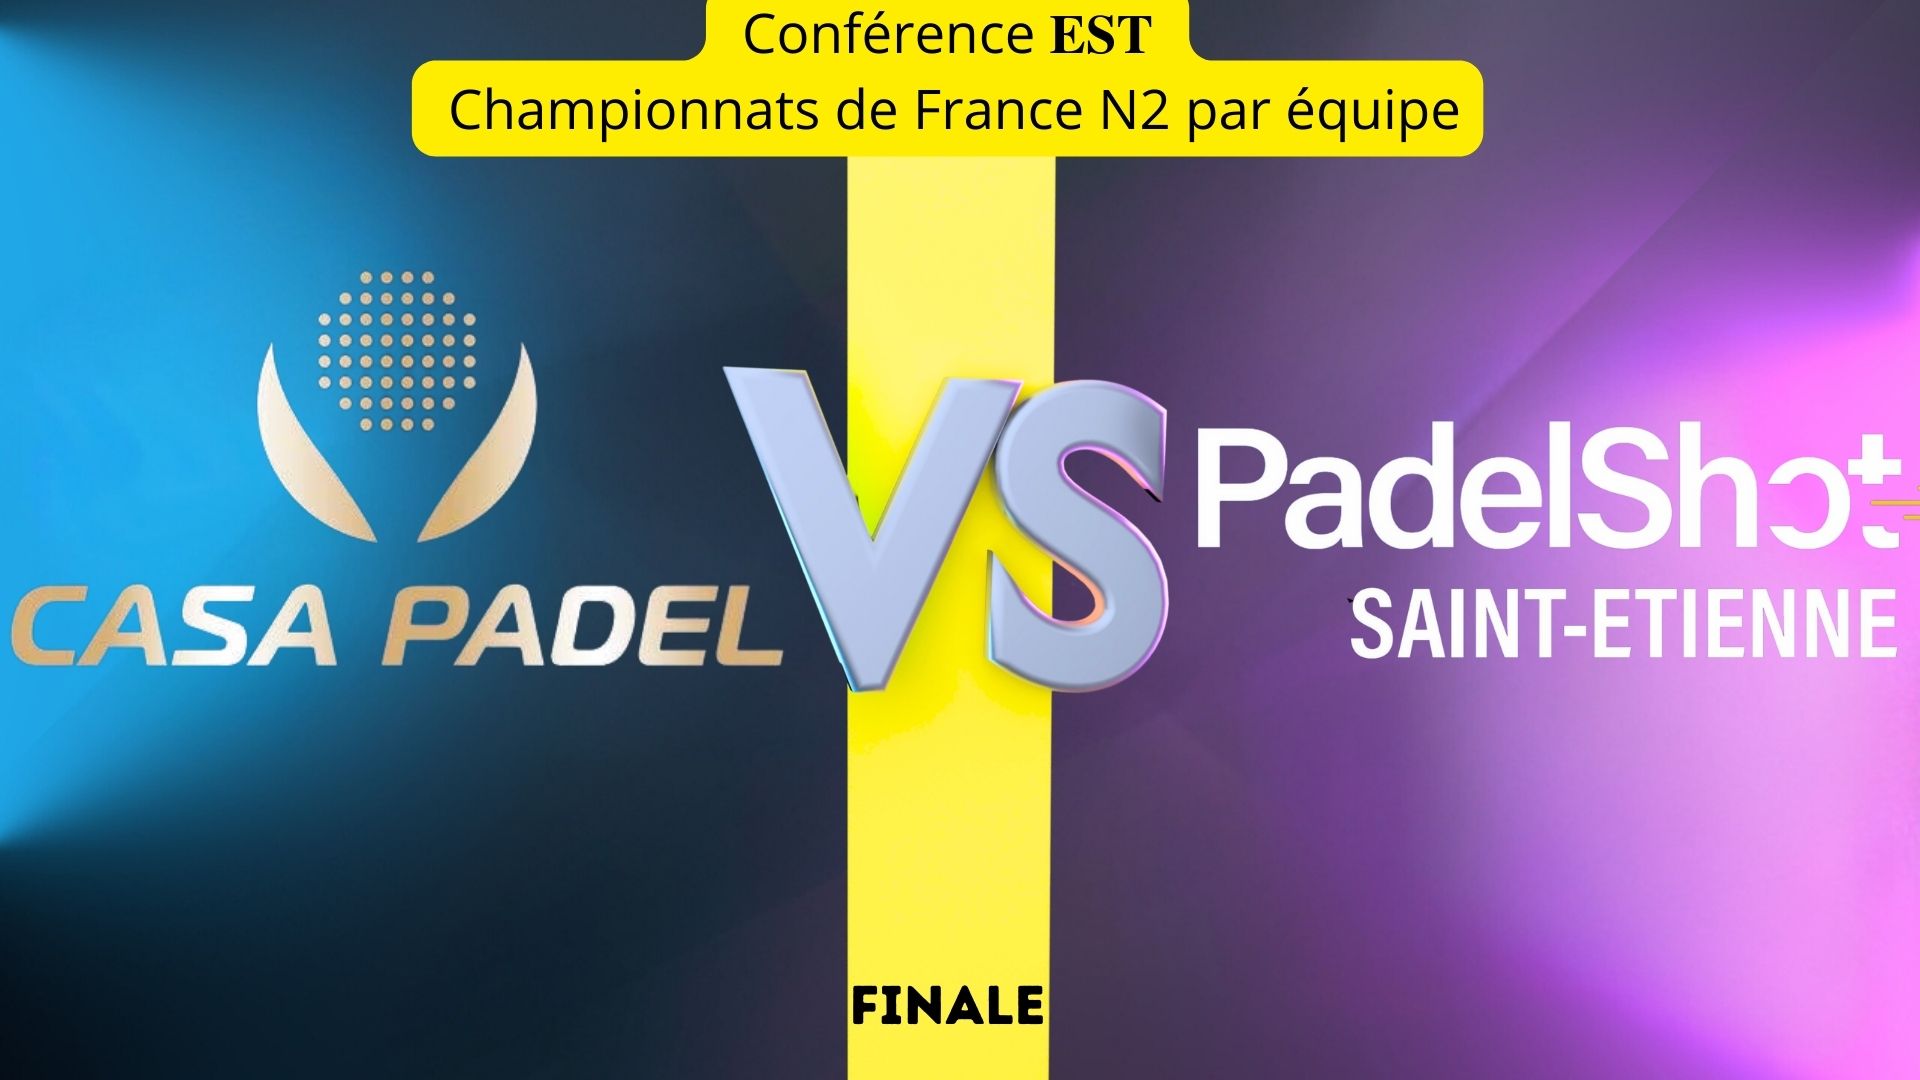 hjem Padel Padel Shot Saint Etienne-konferencen er interklub